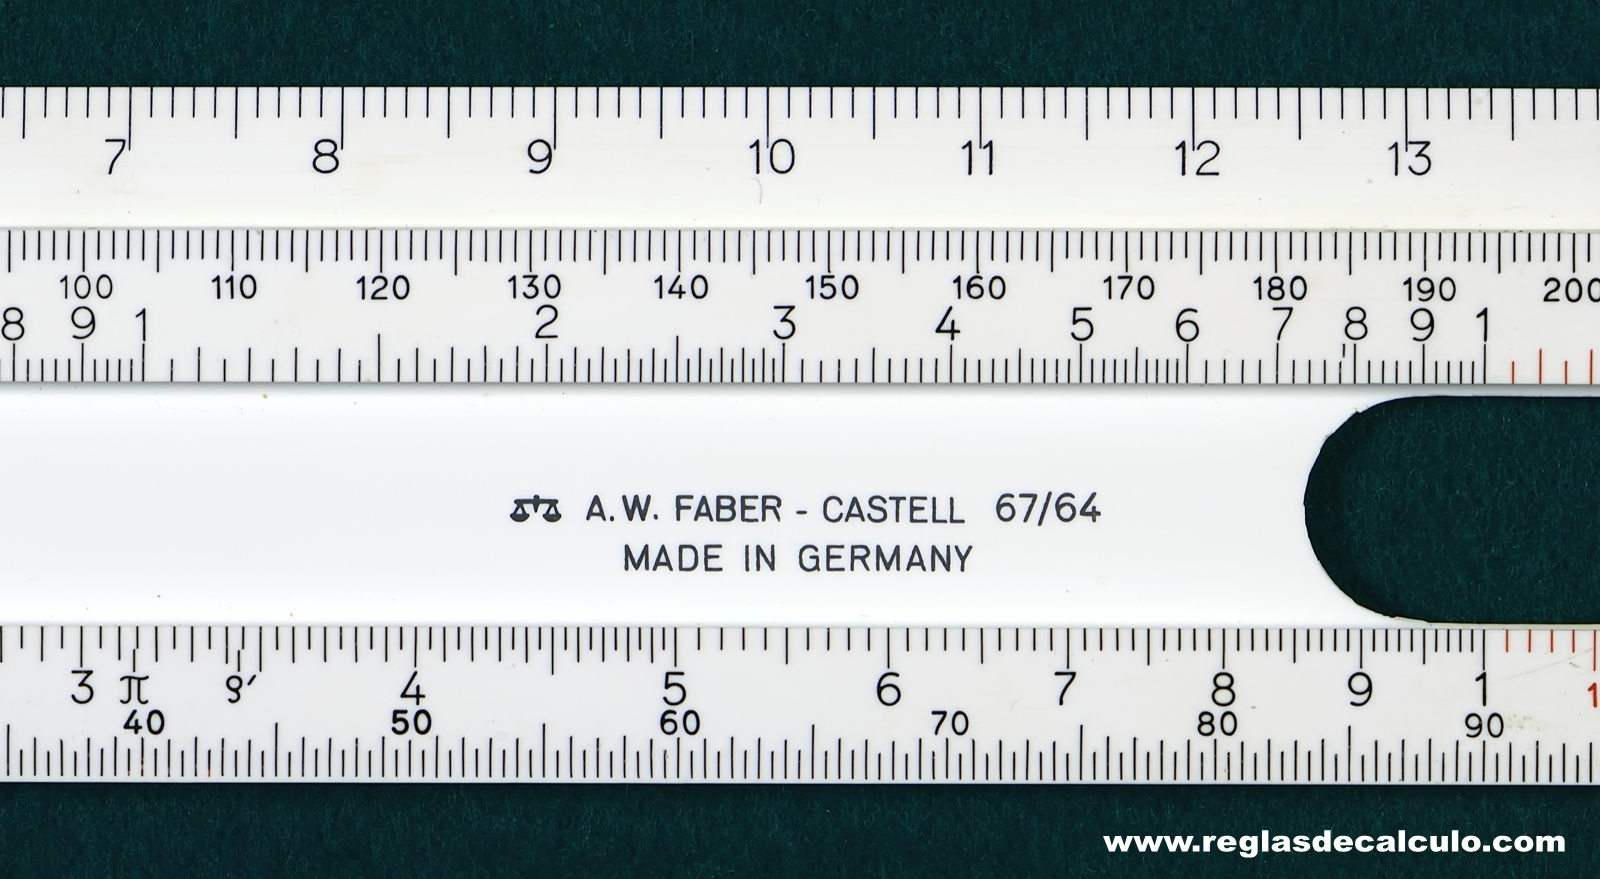 Faber Castell 67/64 Regla de Calculo Slide rule